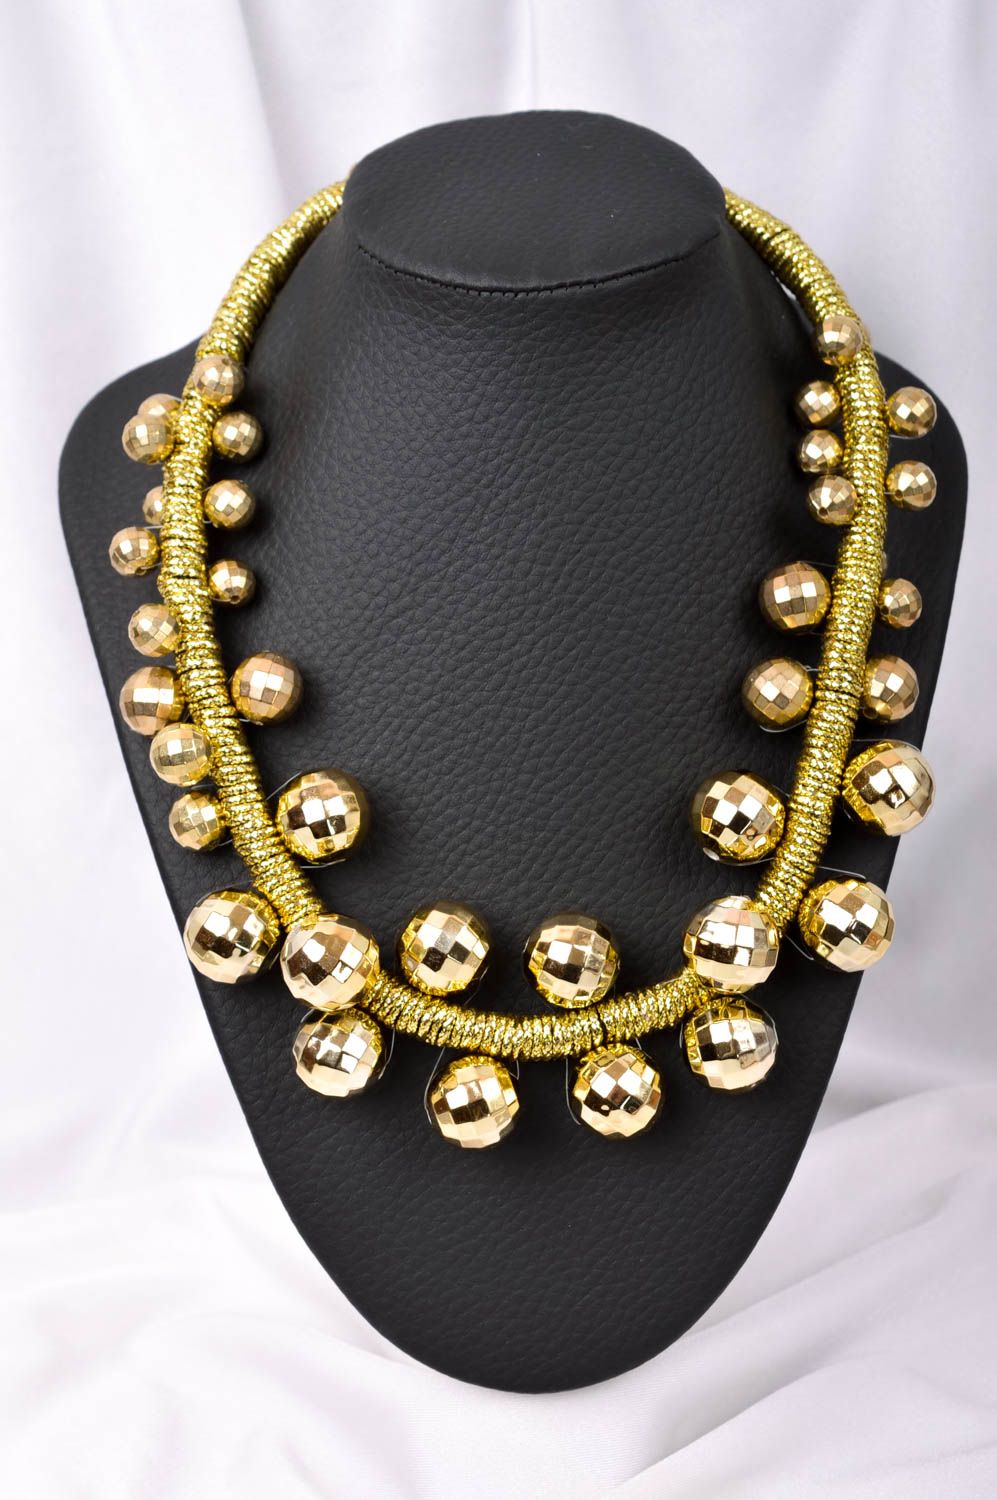 Handmade stylish elegant necklace elegant beaded necklace textile jewelry photo 1